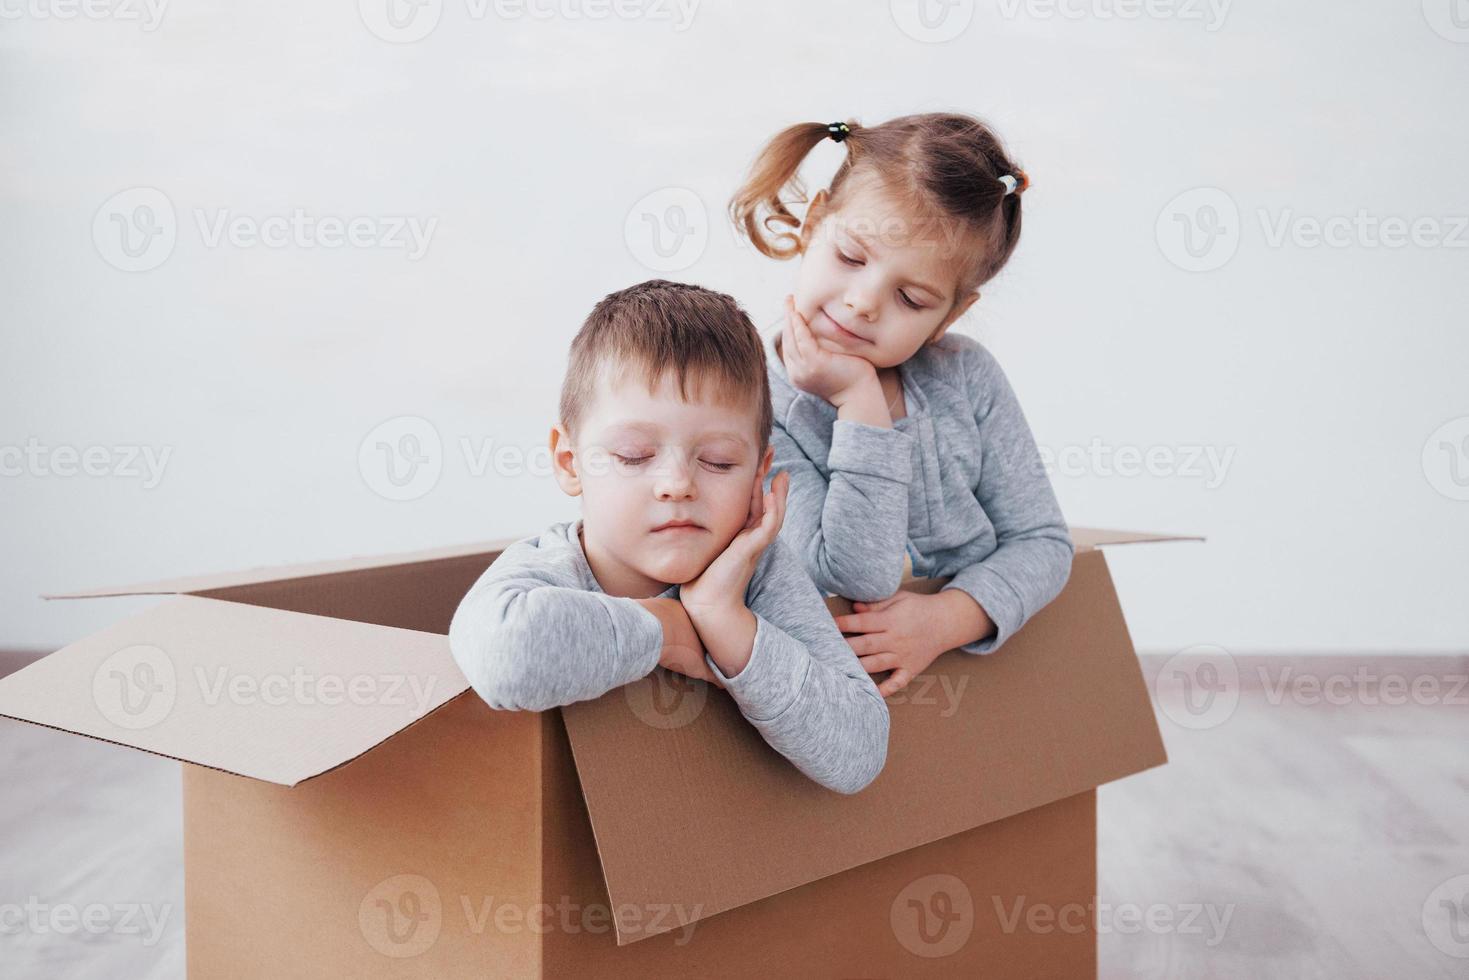 due un bambino e una bambina si sono appena trasferiti in una nuova casa. foto di concetto .. i bambini si divertono.